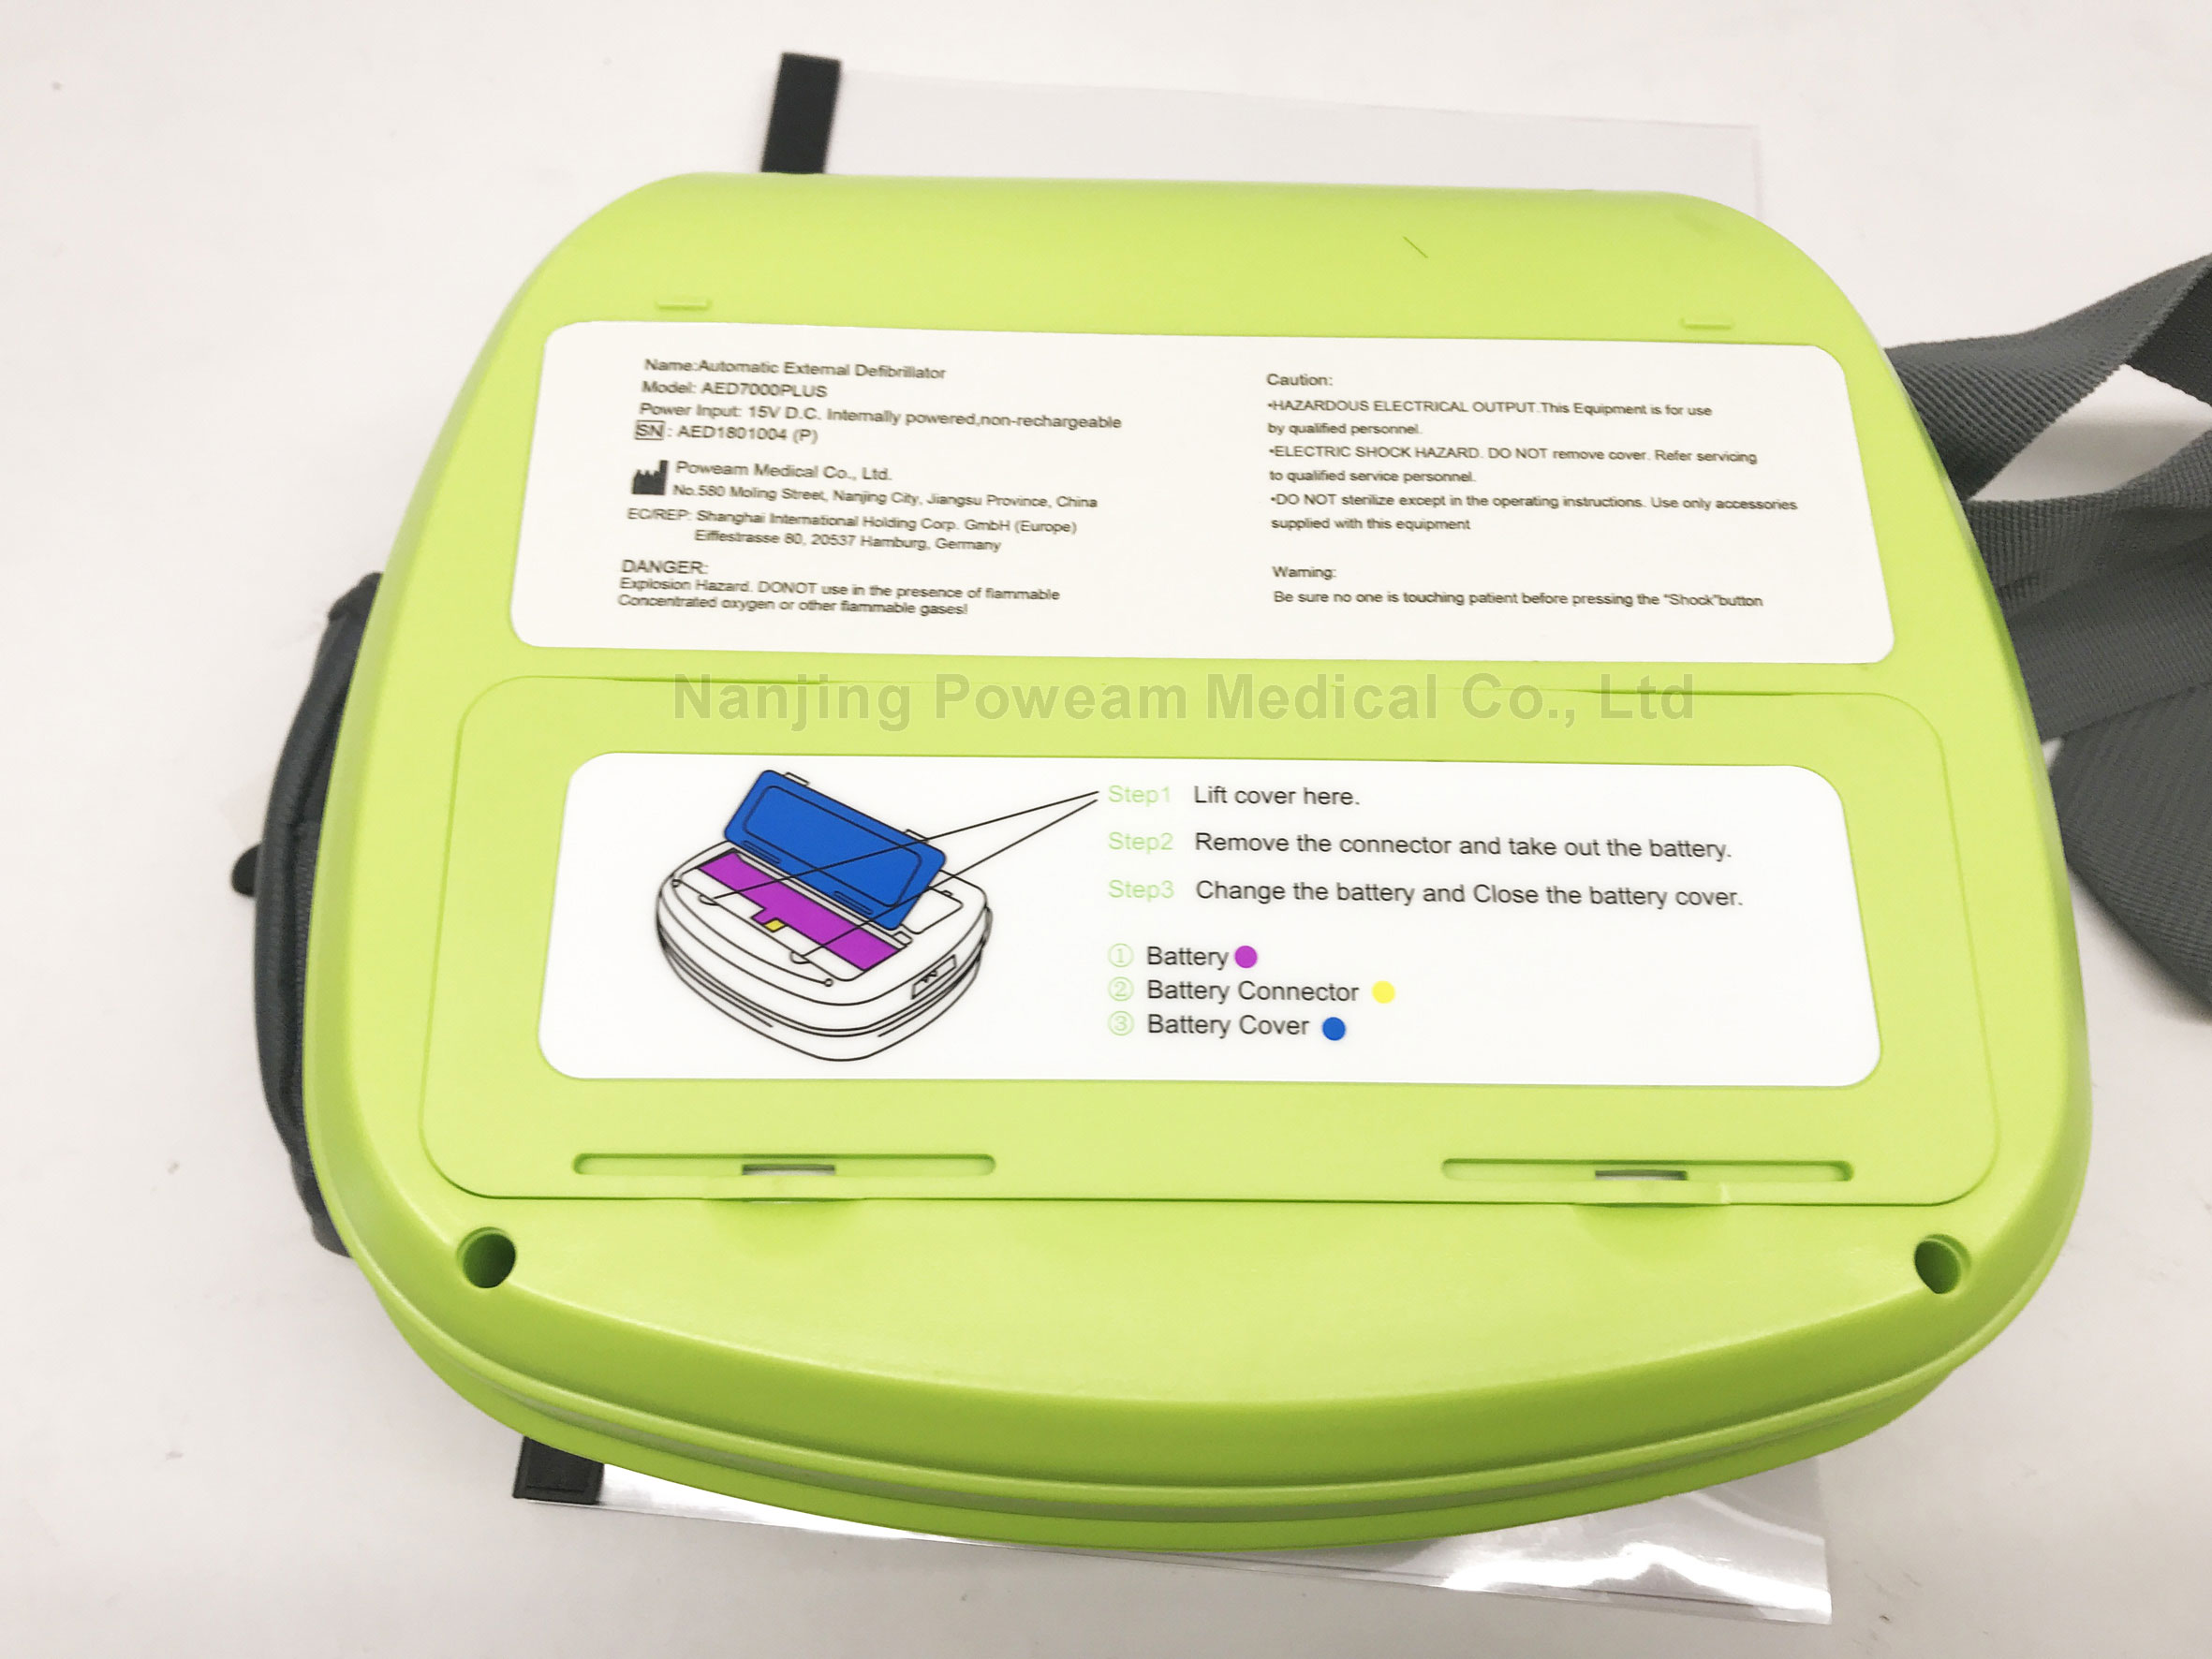 Défibrillateur portable AED avec écran d'écran et ECG, défibrillateur externe automatisé